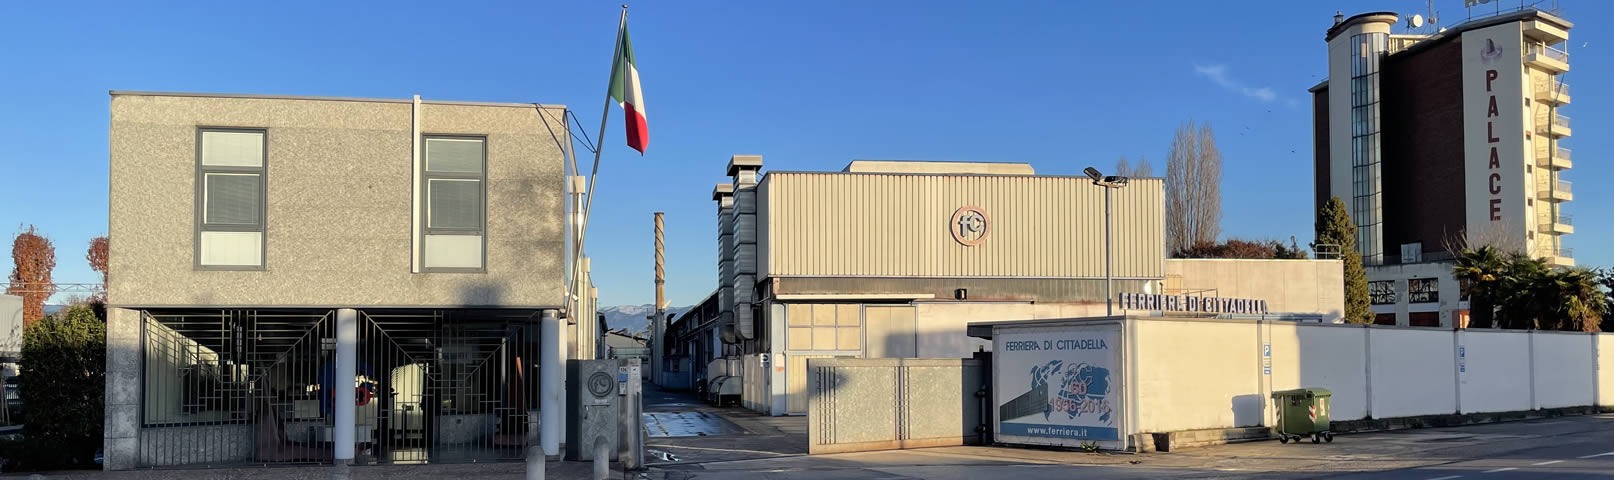 Banner Fabricas - Ferriera di Cittadella - Italia